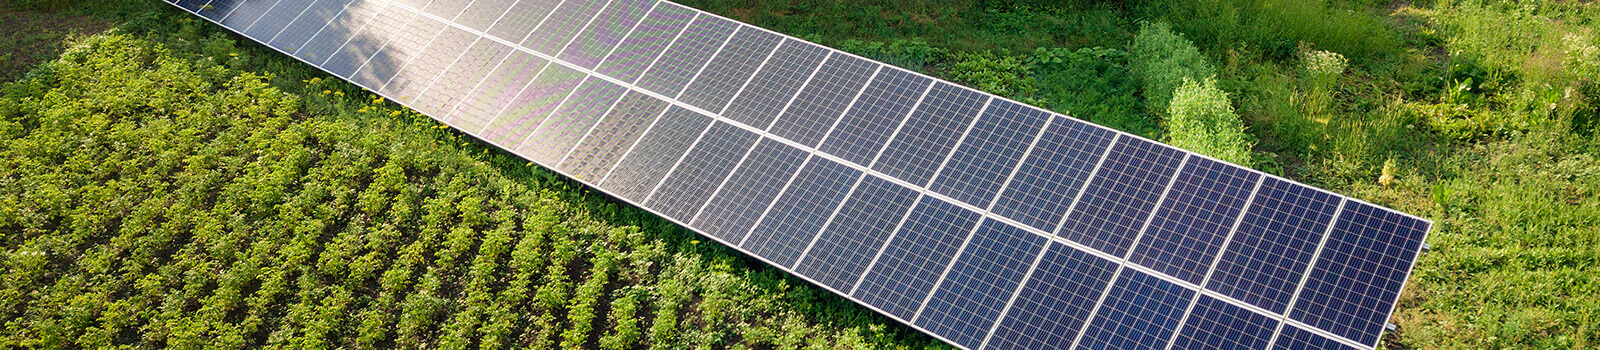 Photovoltaics for farmers